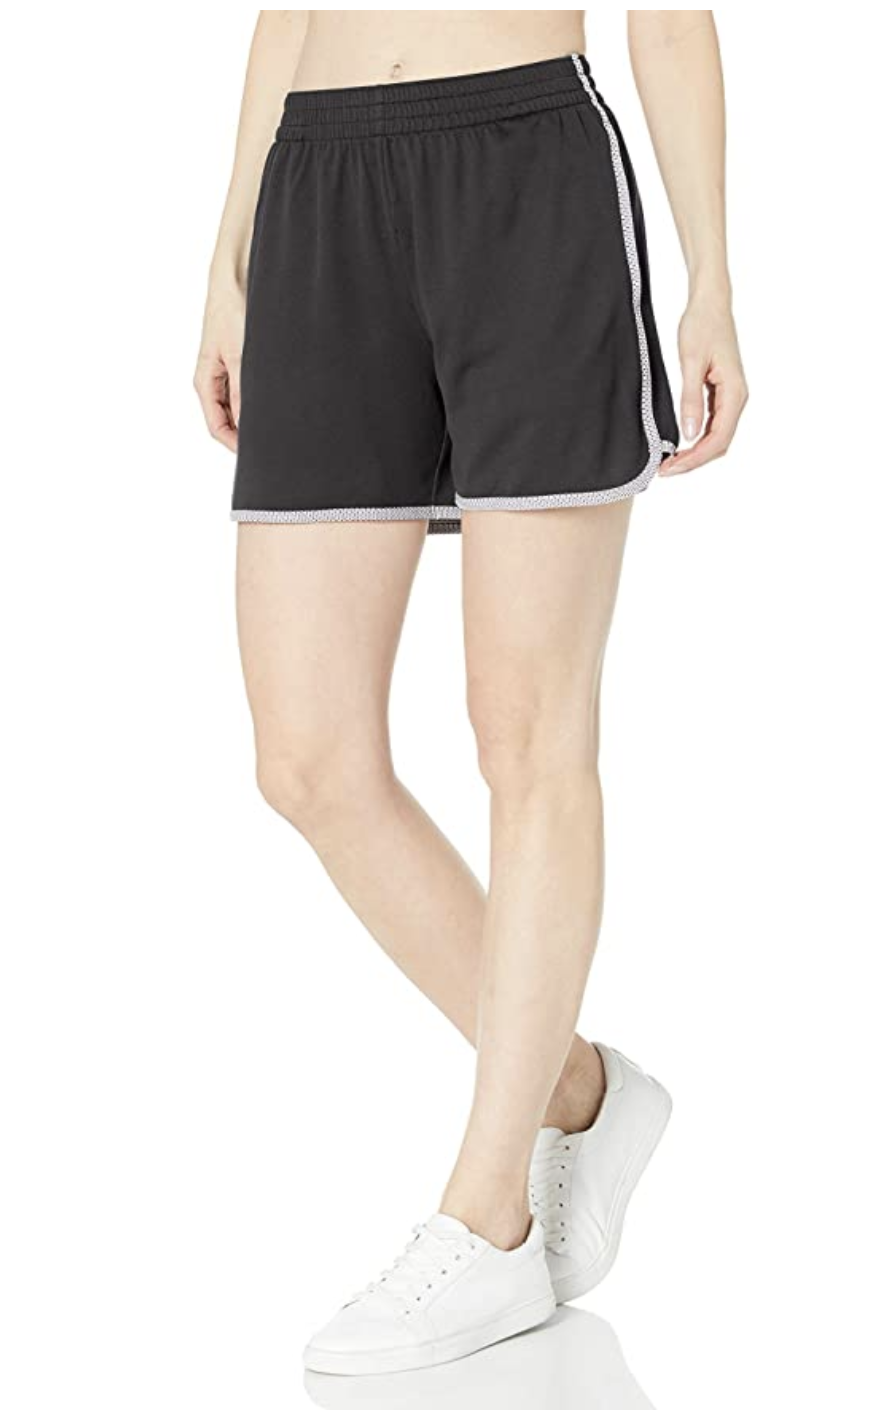 Champion Sport Shorts On Sale On Amazon!